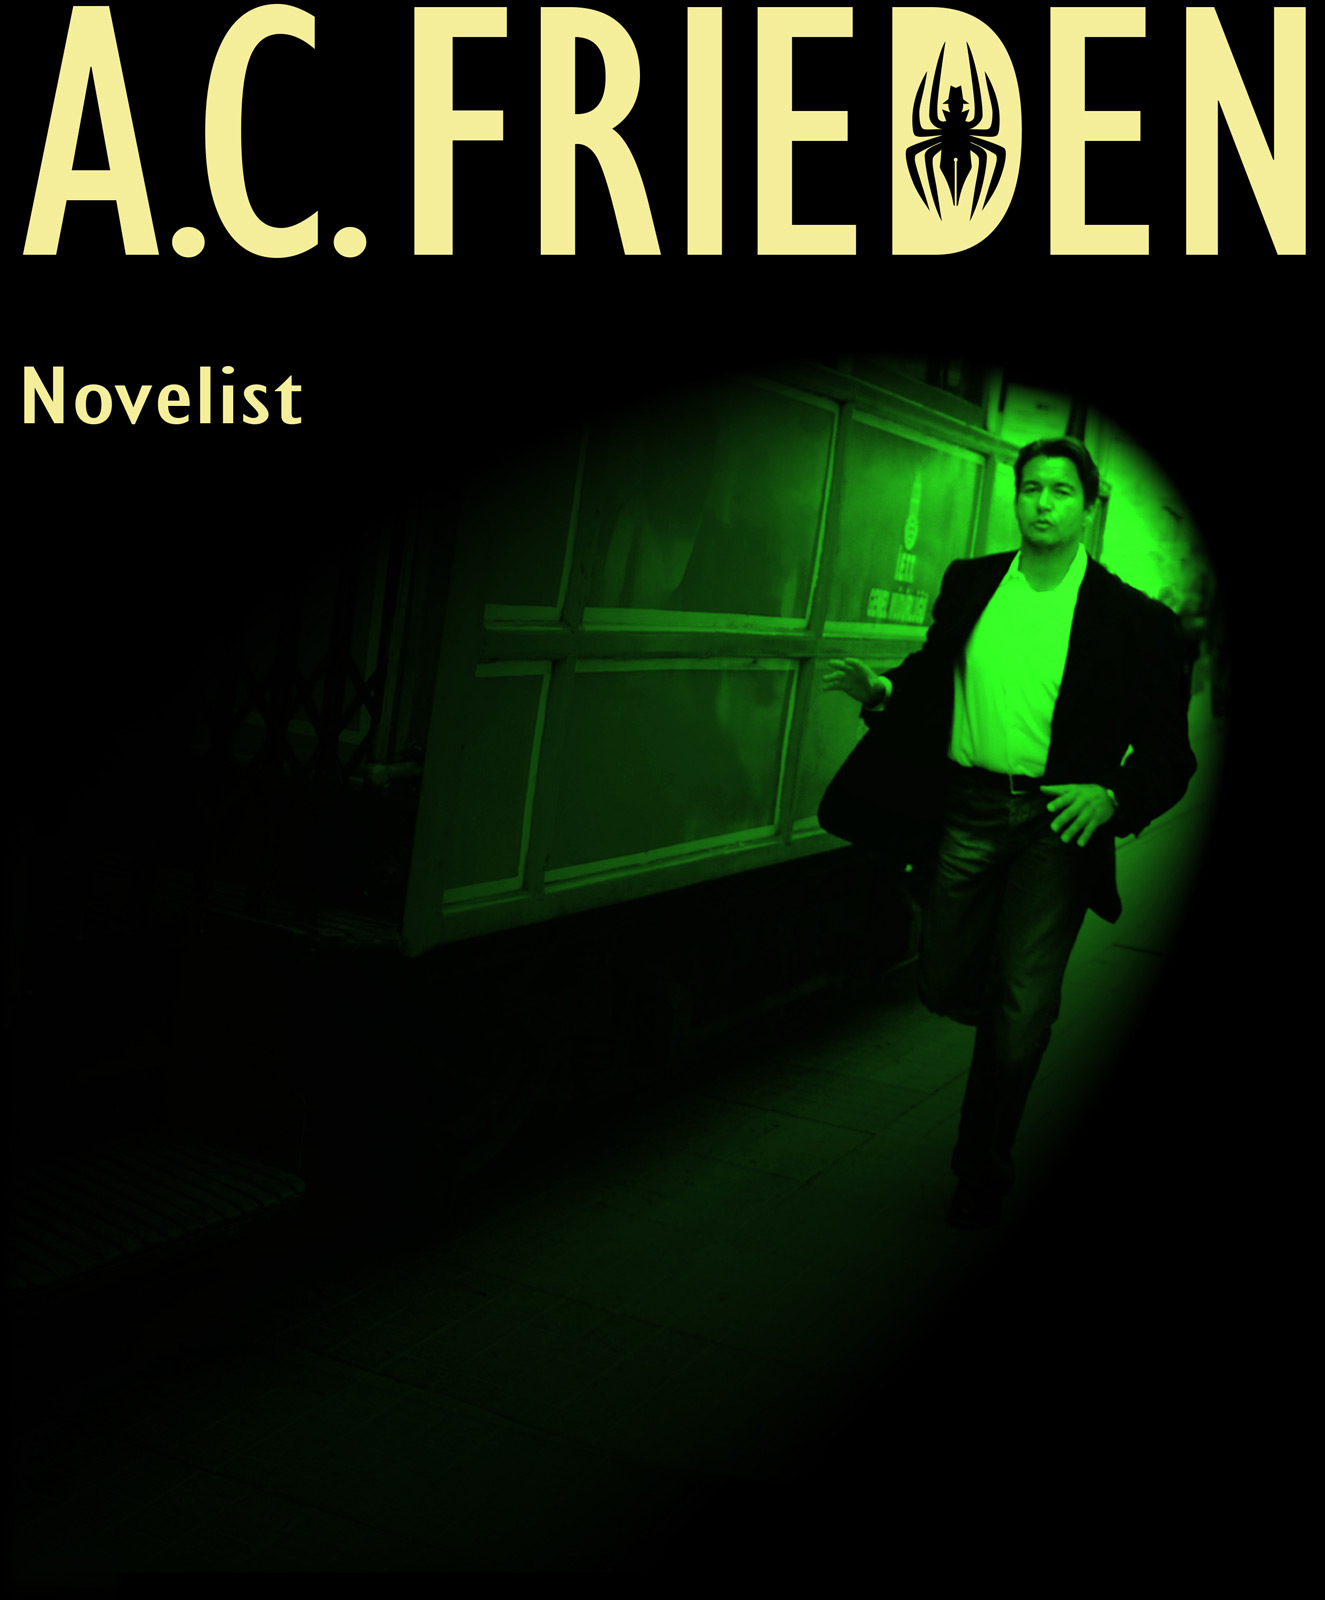 A.C. Frieden - Novelist - CLIGK to ENTER